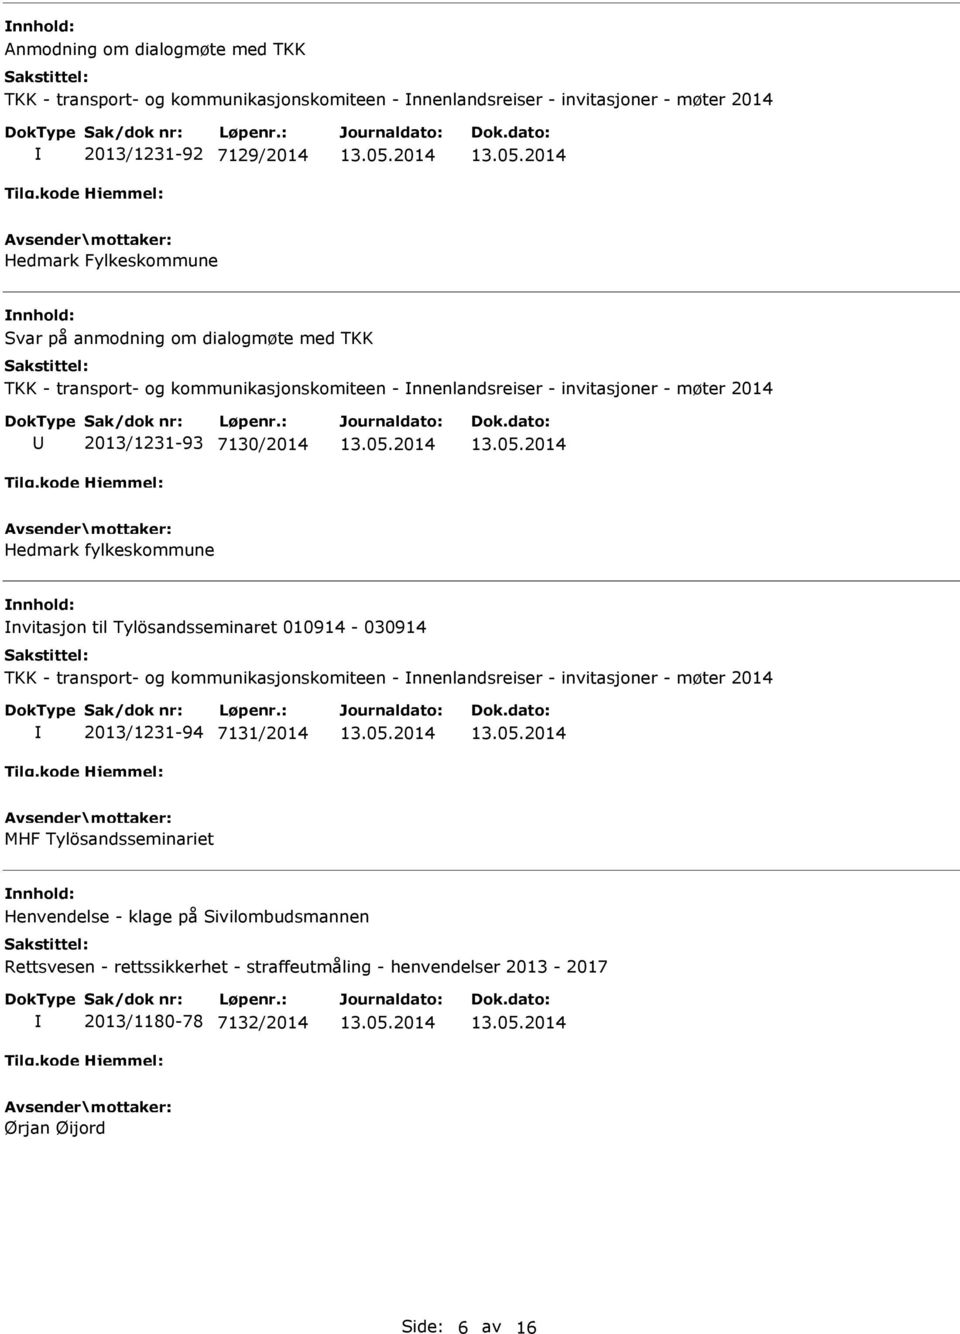 nvitasjon til Tylösandsseminaret 010914-030914 TKK - transport- og kommunikasjonskomiteen - nnenlandsreiser - invitasjoner - møter 2014 2013/1231-94 7131/2014 MHF